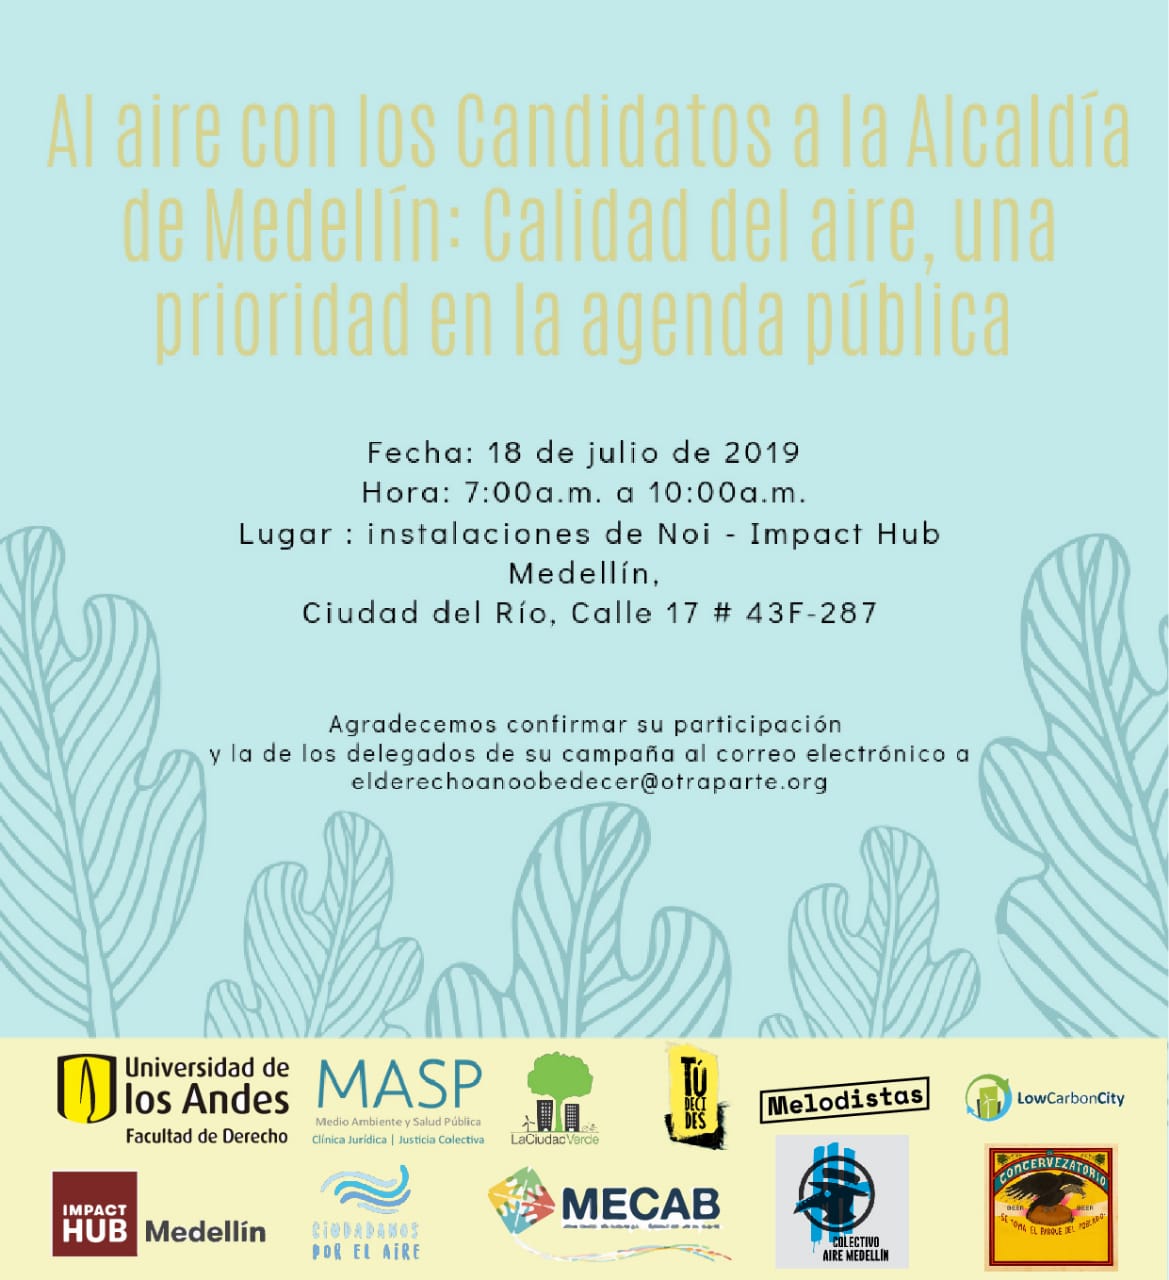 Al aire con los candidatos a la Alcaldía de Medellín